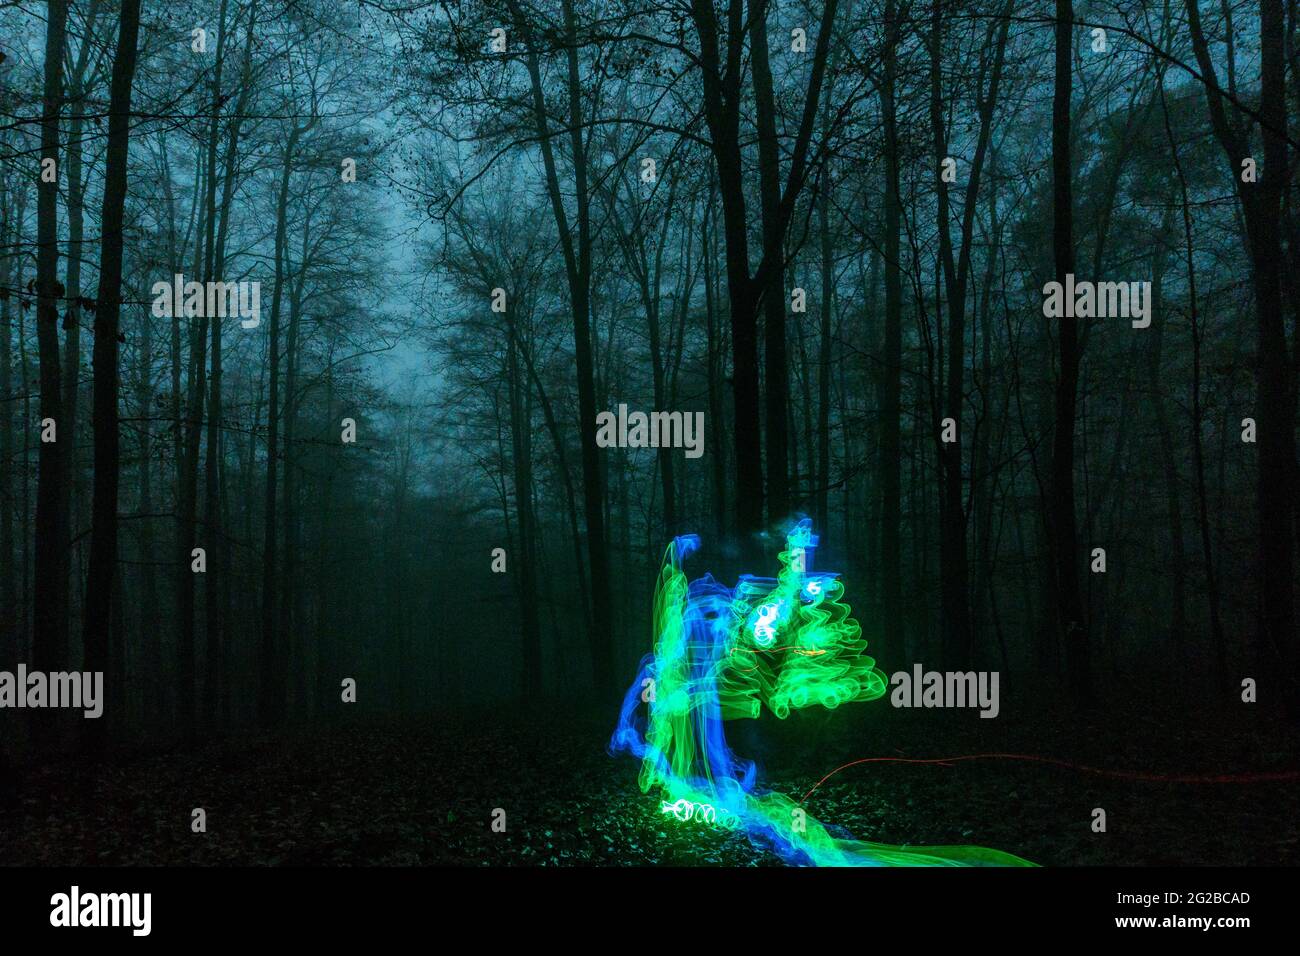 Des lumières bleues et vertes se déplacent dans la mystérieuse forêt sombre et brumeuse la nuit Banque D'Images